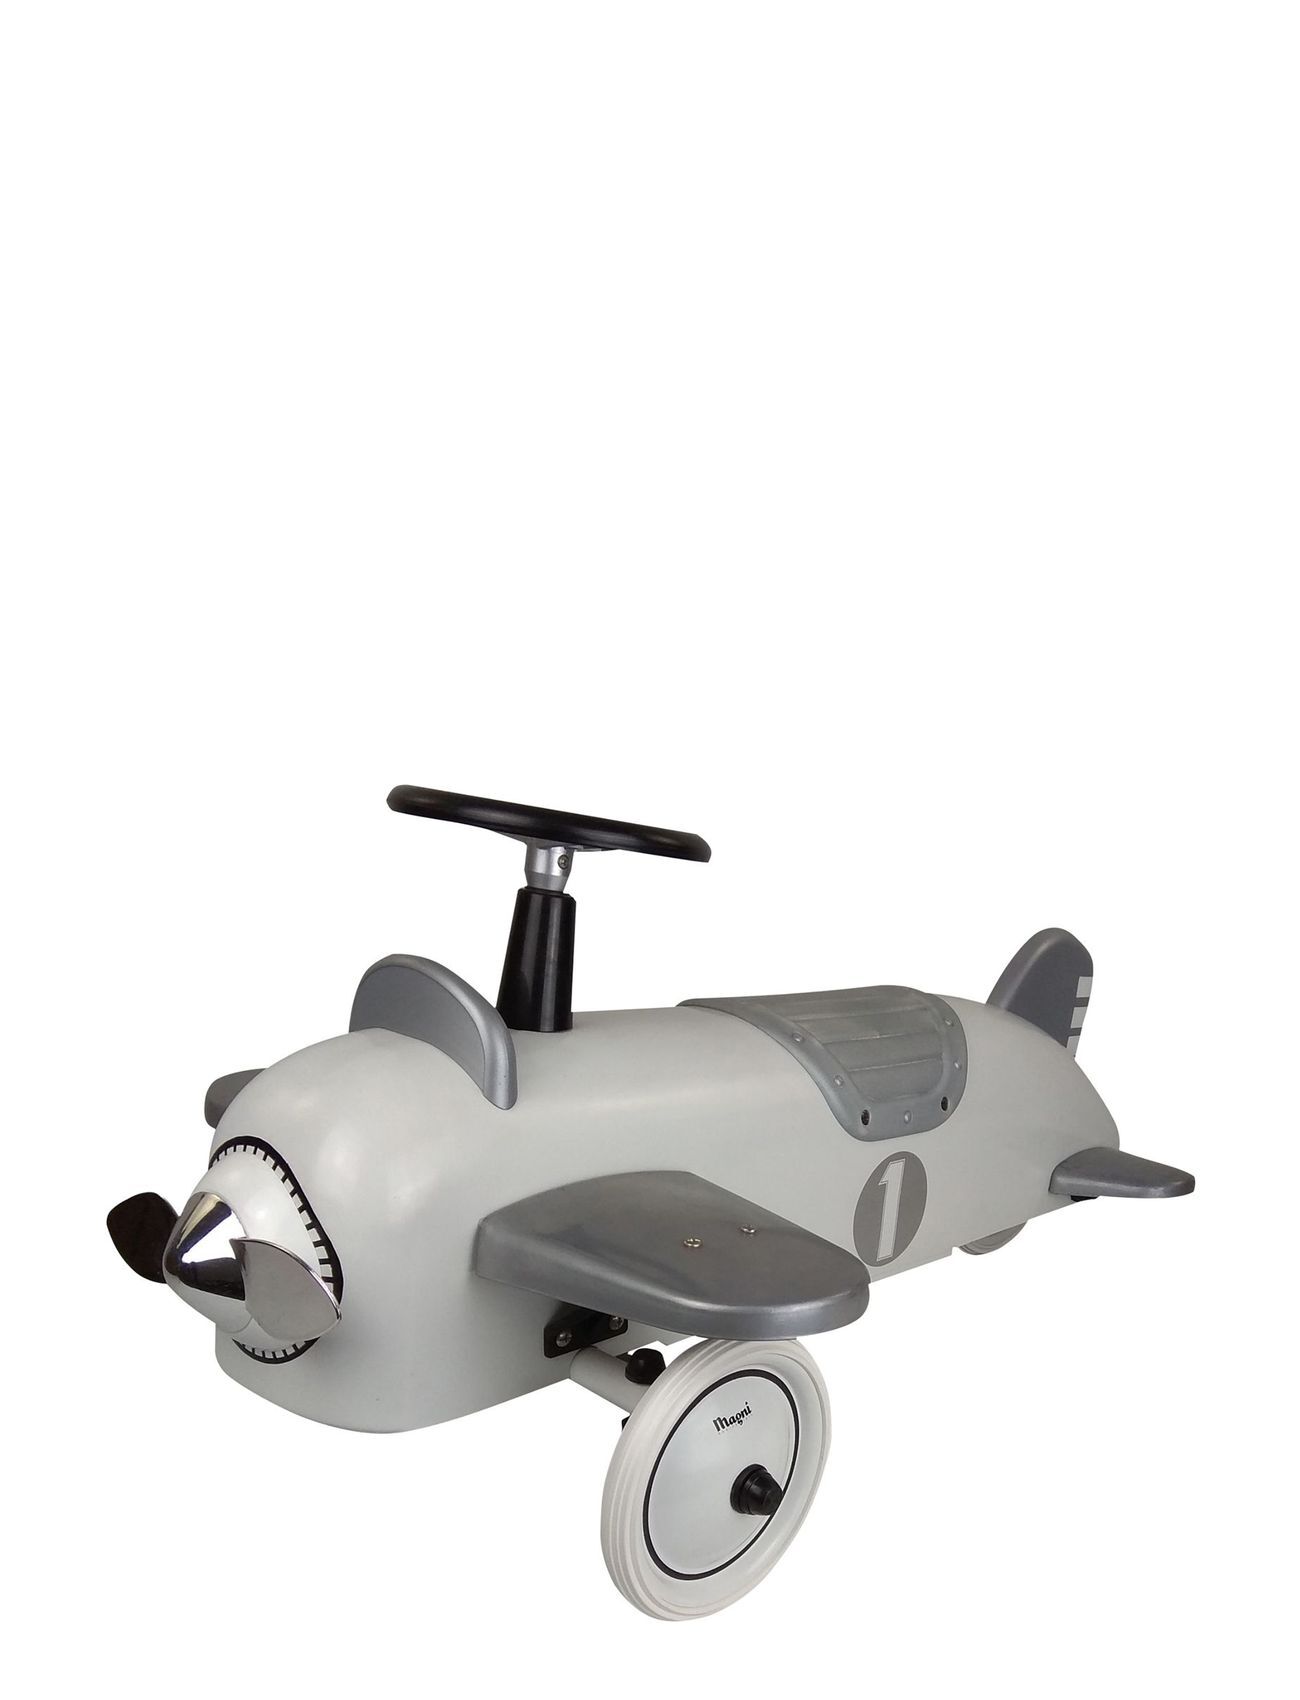 Magni Toys Ride-On-Airplane, White/Silver Toys Ride On Toys Grå Magni Toys